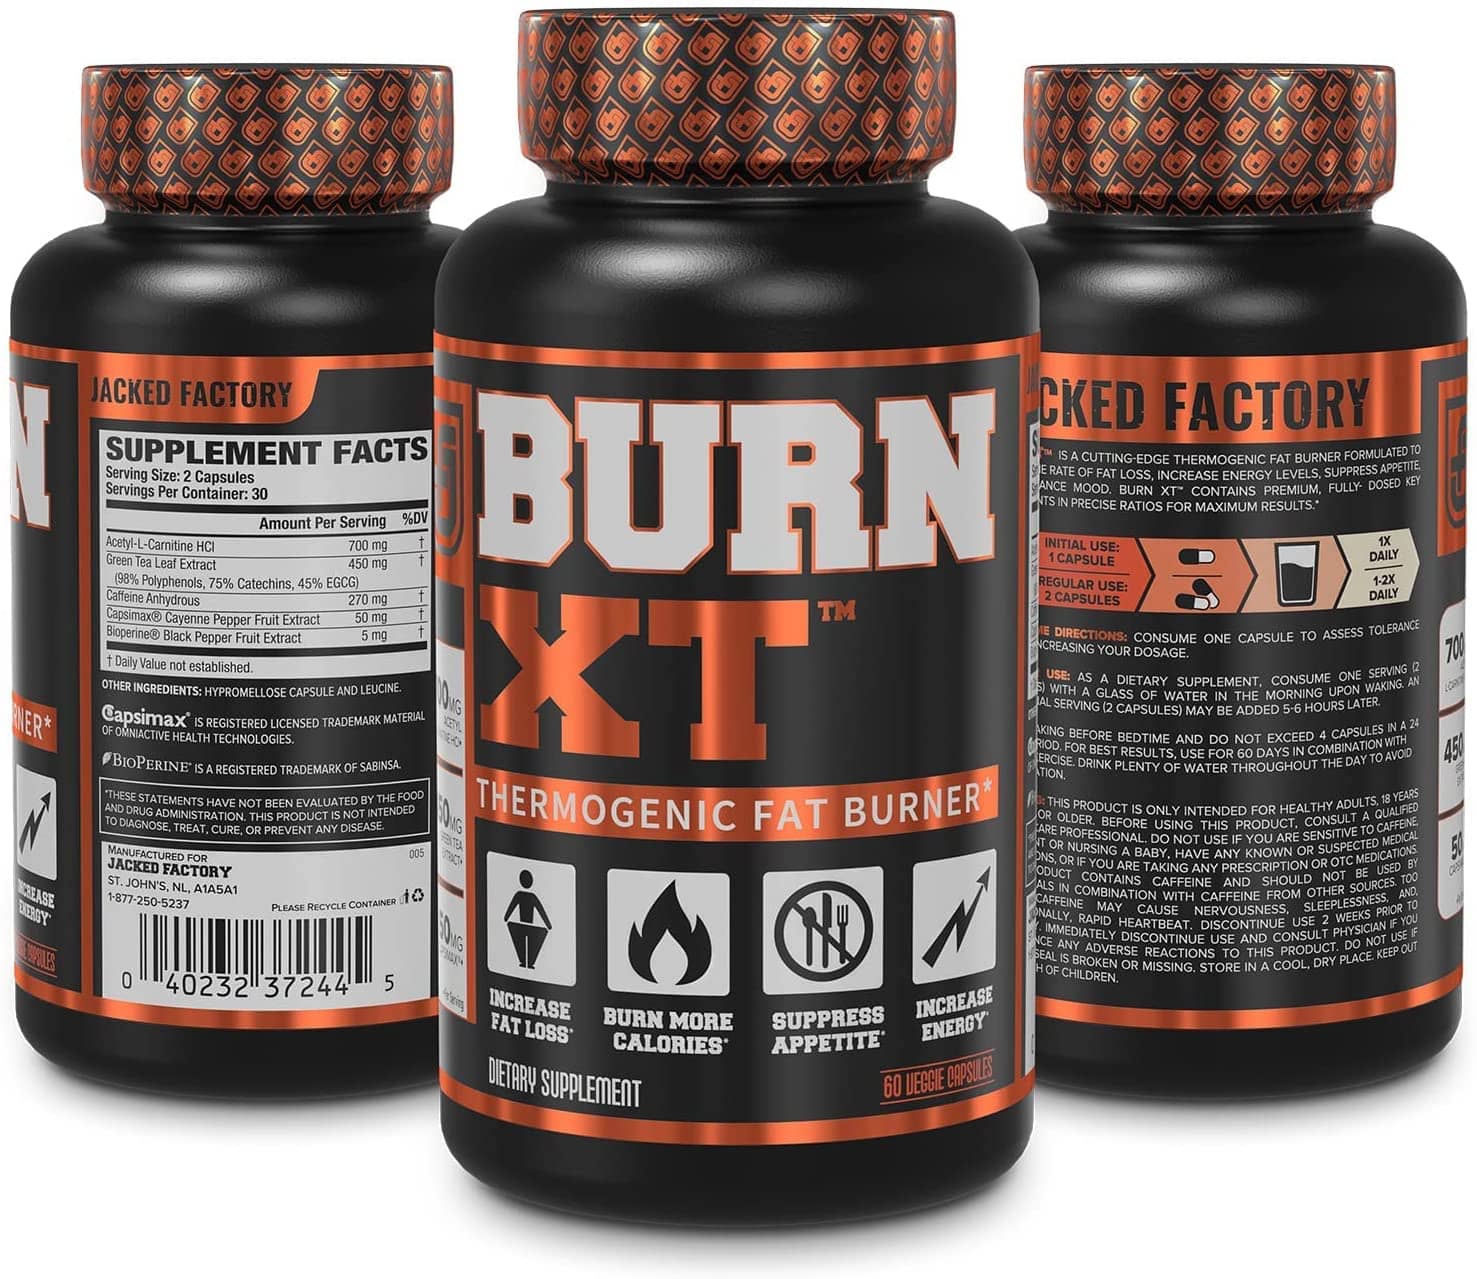 Burn XT Thermogenic Fat Burner